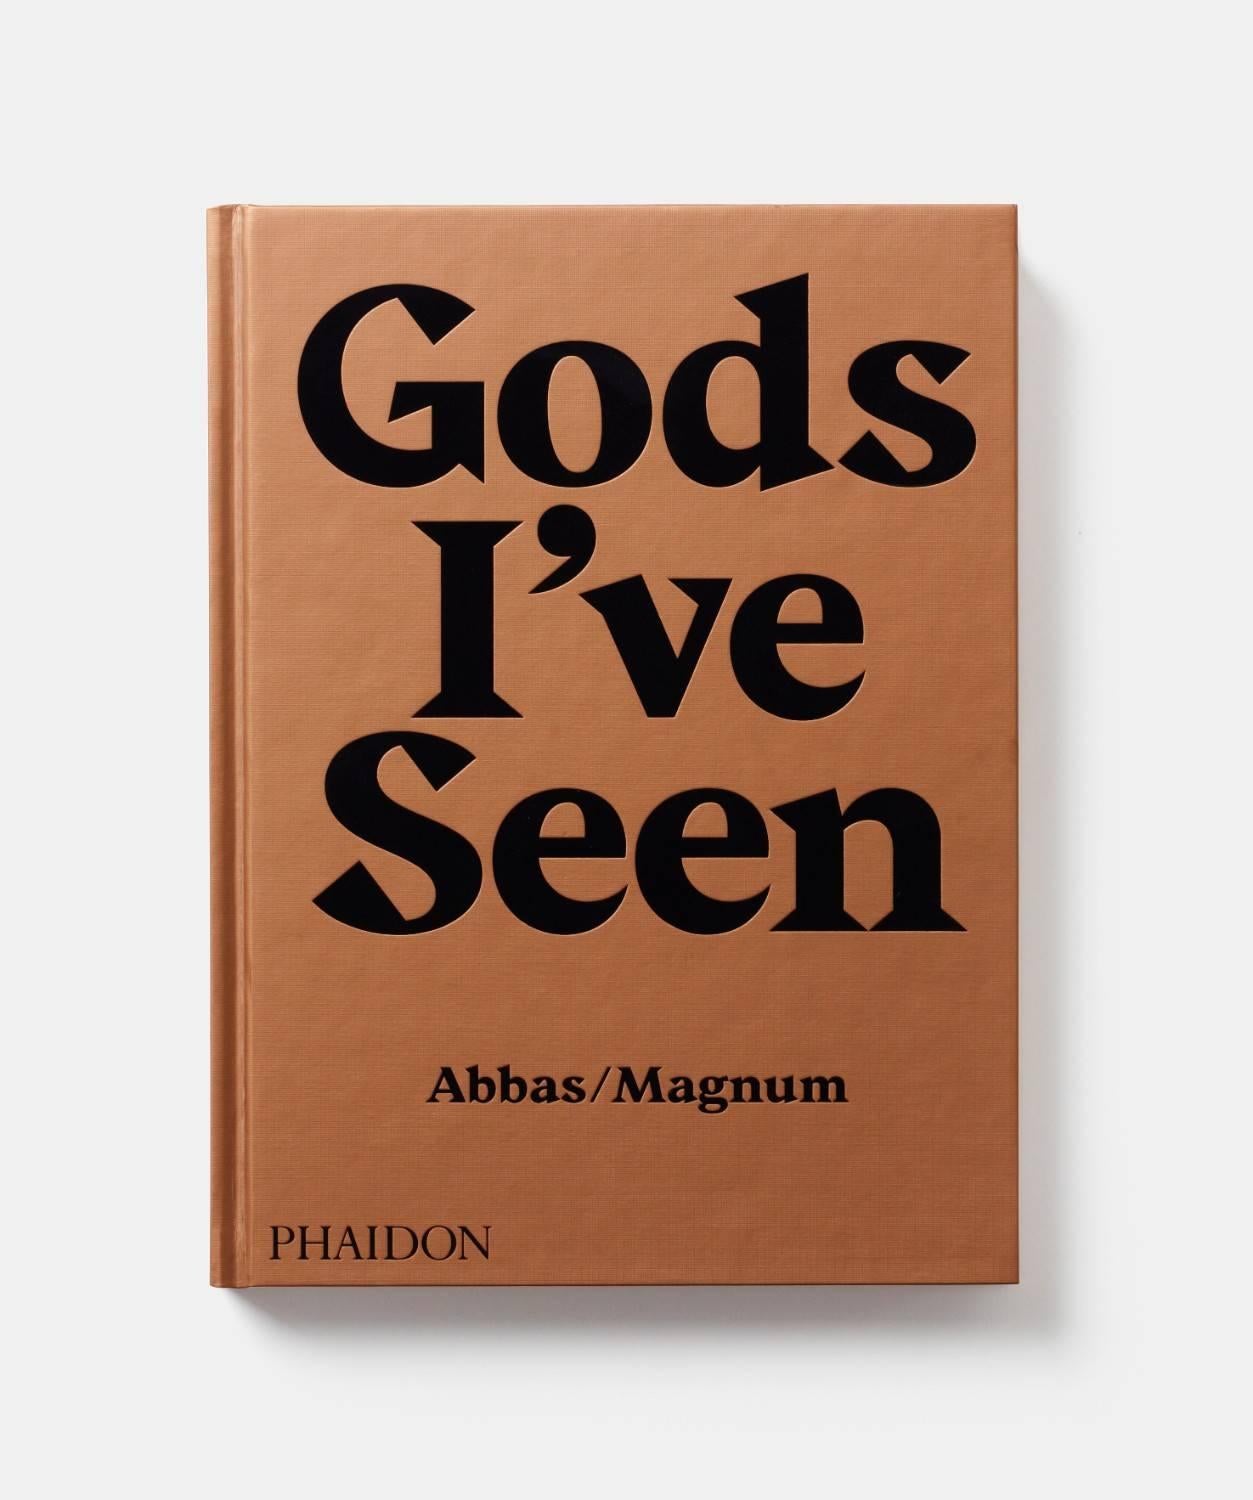 Aus der Sicht von Magnum's Abbas - die mystische Welt der Hindus, von alten Riten bis zum heutigen Glauben

Dies ist das neueste Buch in Abbas' transzendenter Reihe über die großen Weltreligionen, in dem rituelle Elemente - Wind, Wasser, Erde und